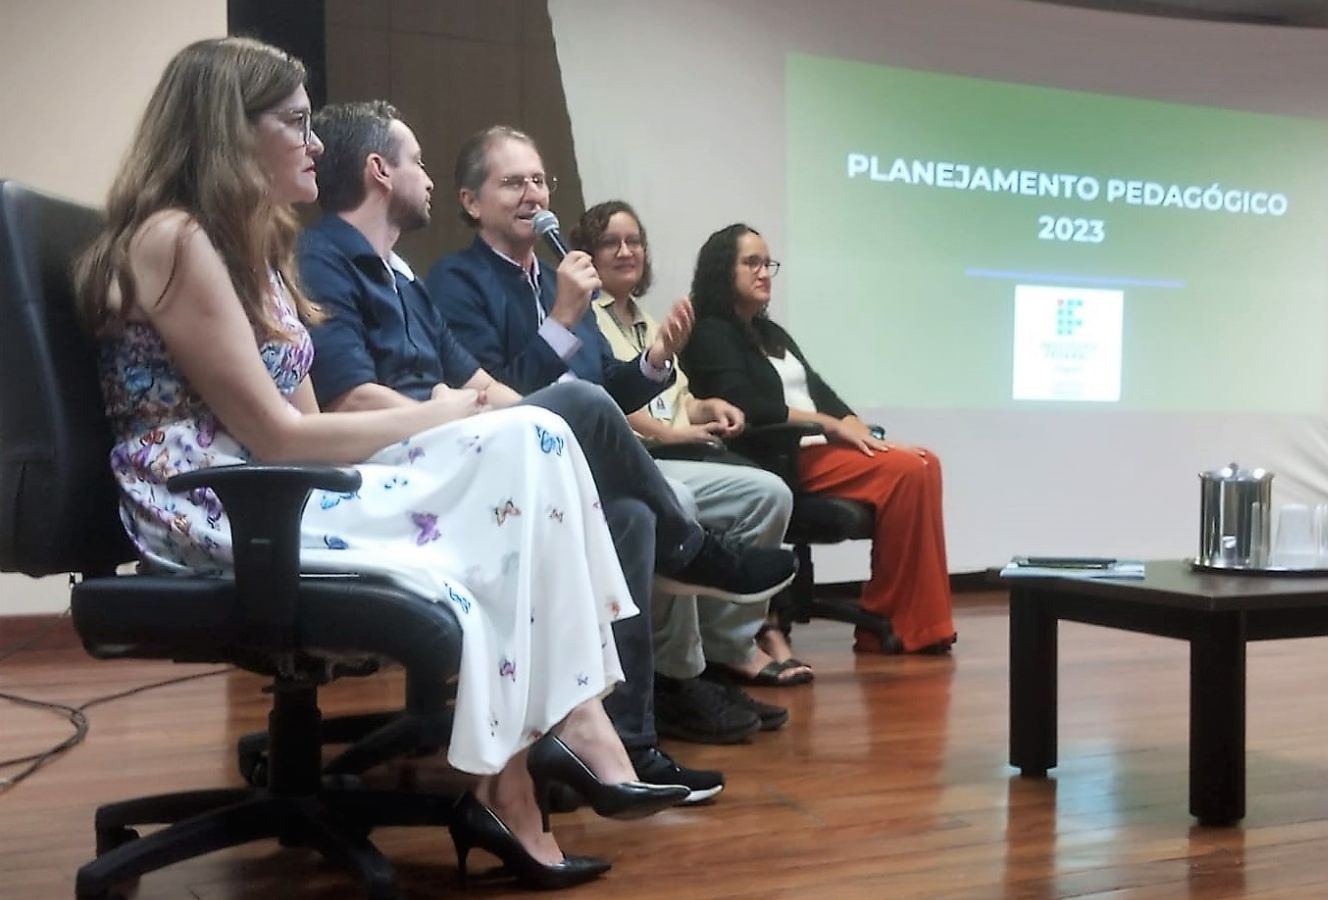 Planejamento Pedagógico reuniou gestores e docentes do campus Maceió